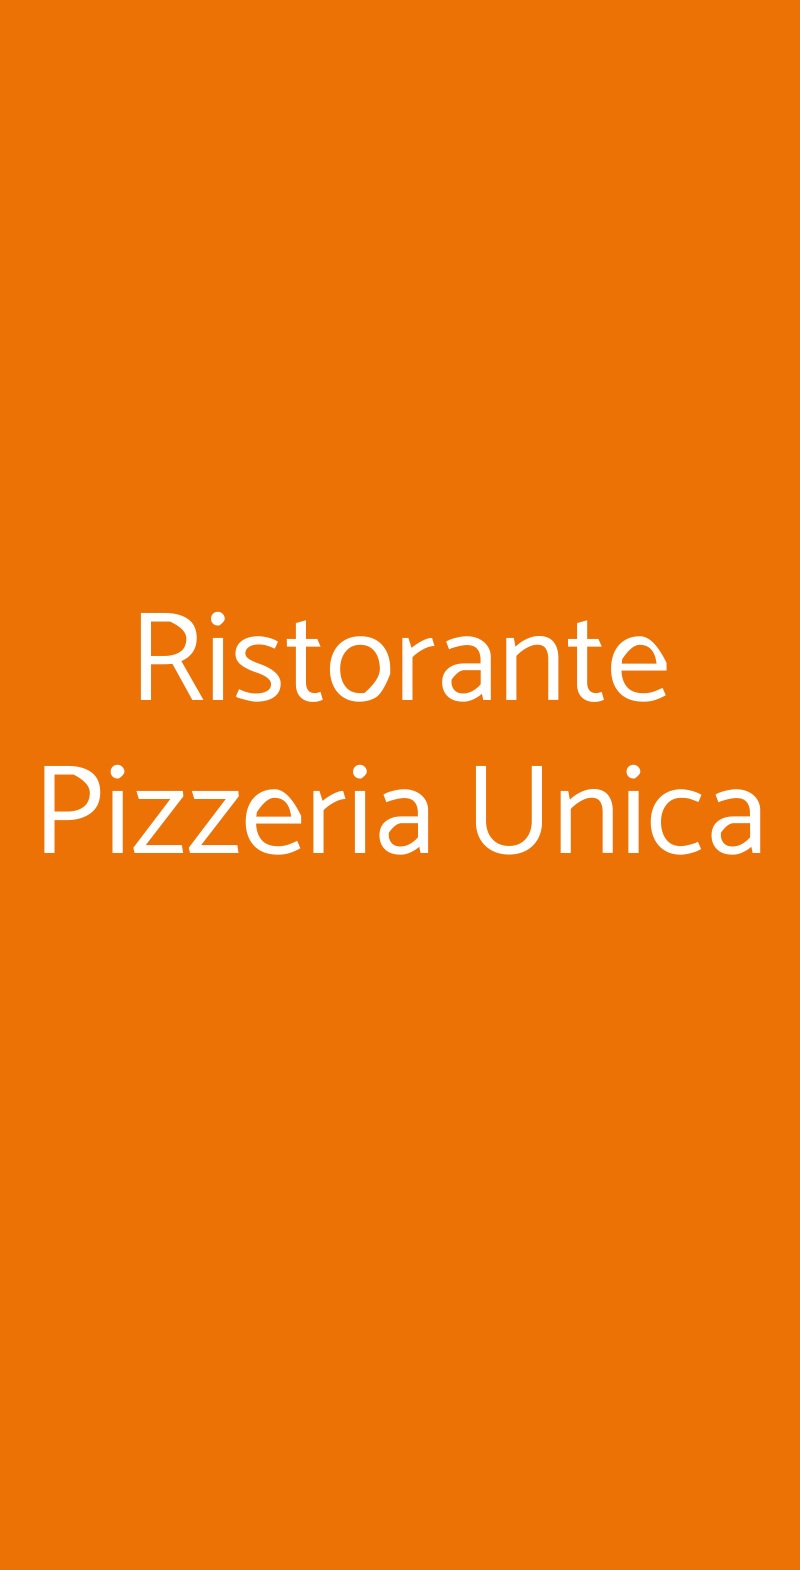 Ristorante Pizzeria Unica Milano menù 1 pagina